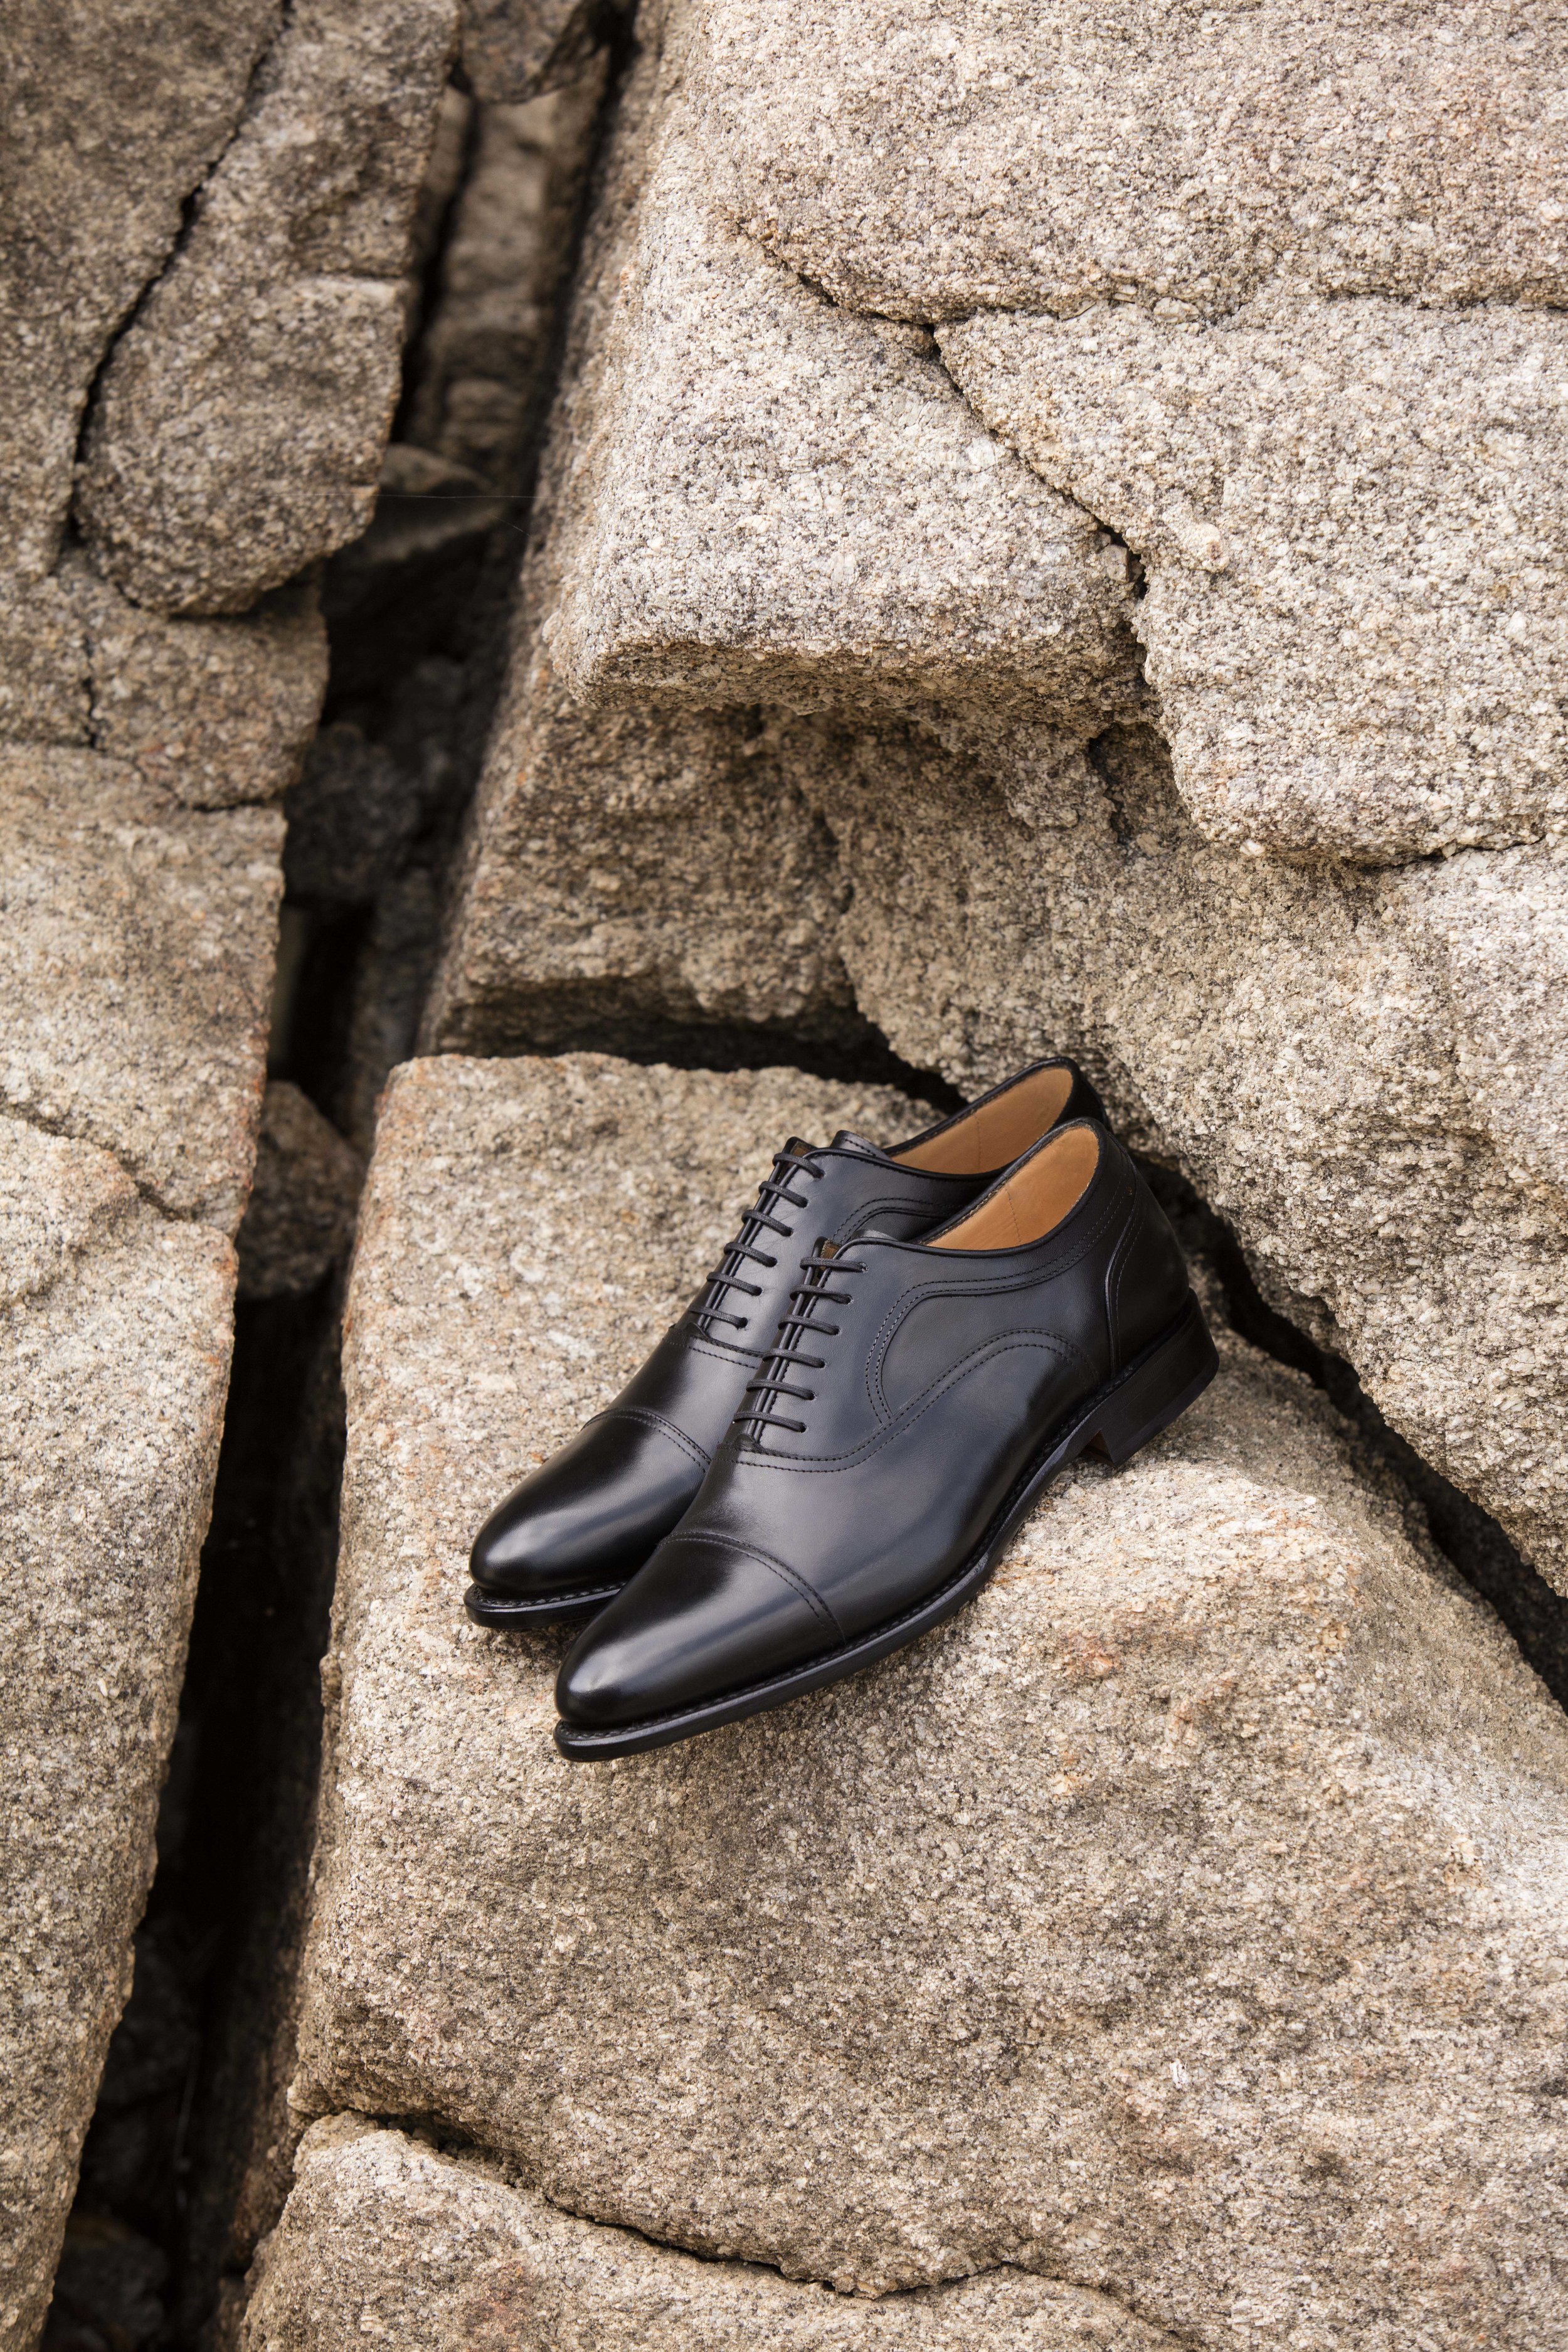 Sip prefacio Lucro Nueva colección de Glent Shoes, zapatos a medida — Pecados Veniales